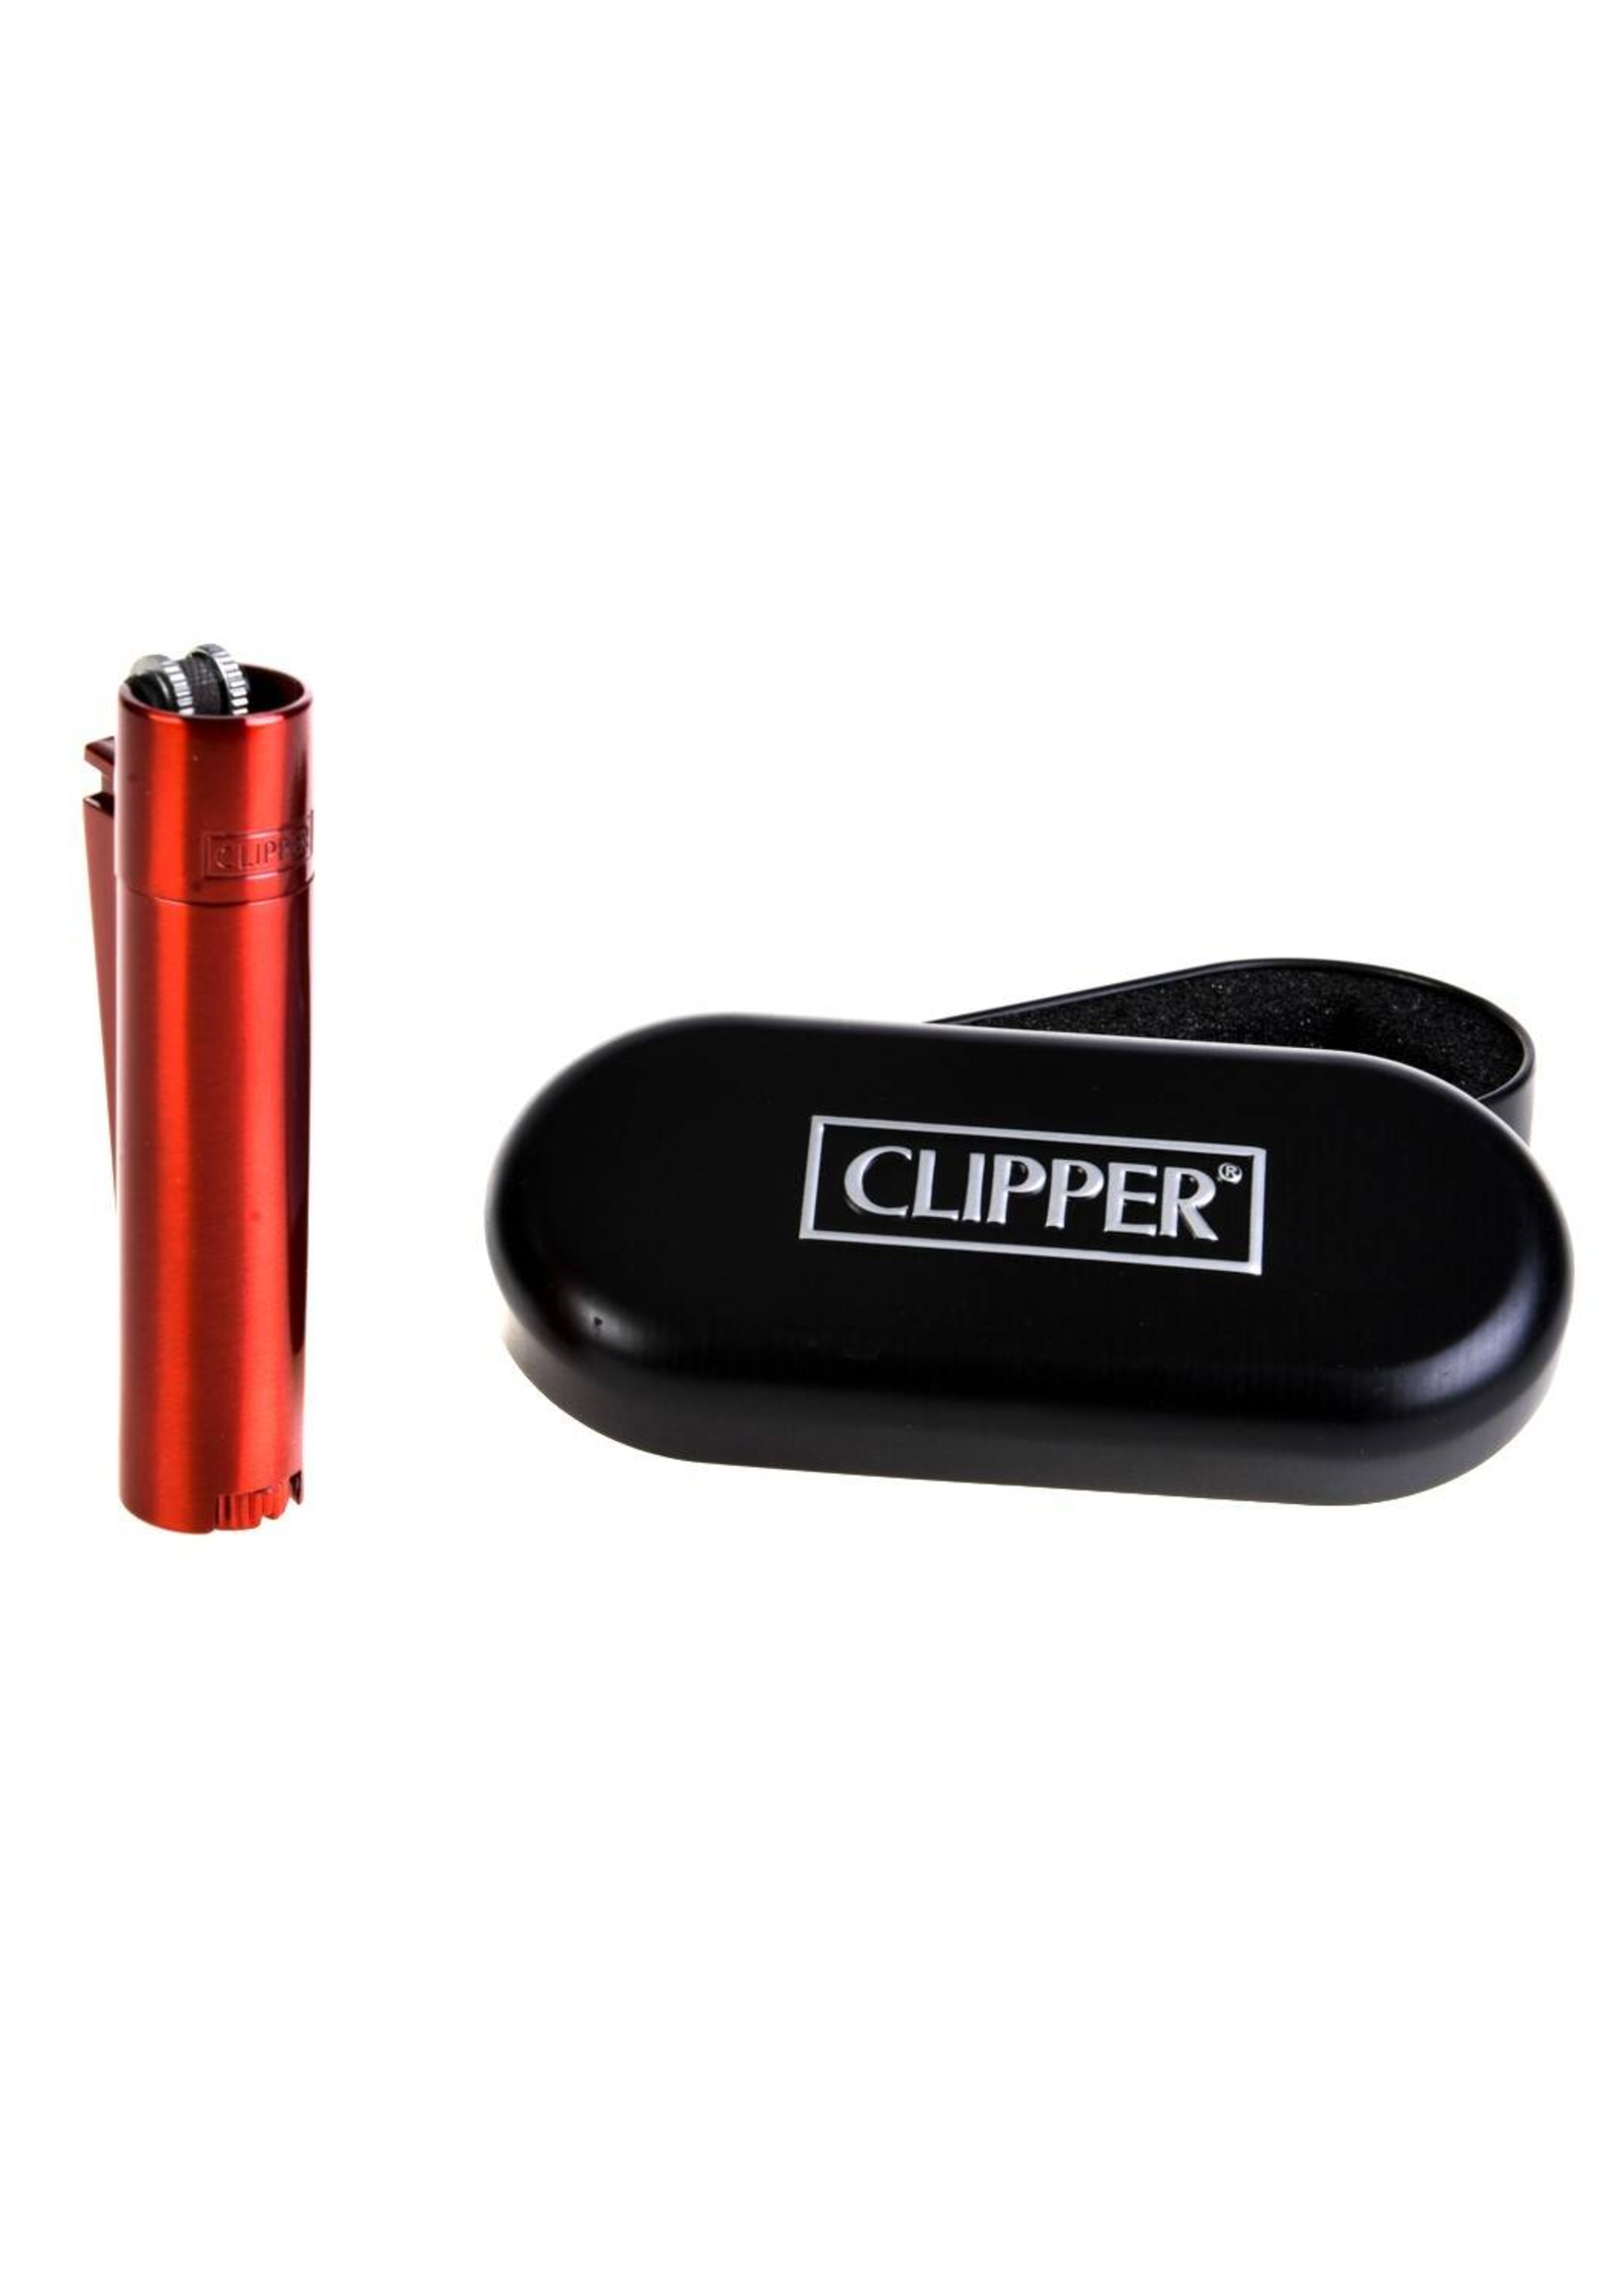 CLIPPER CLIPPER RED DEVIL